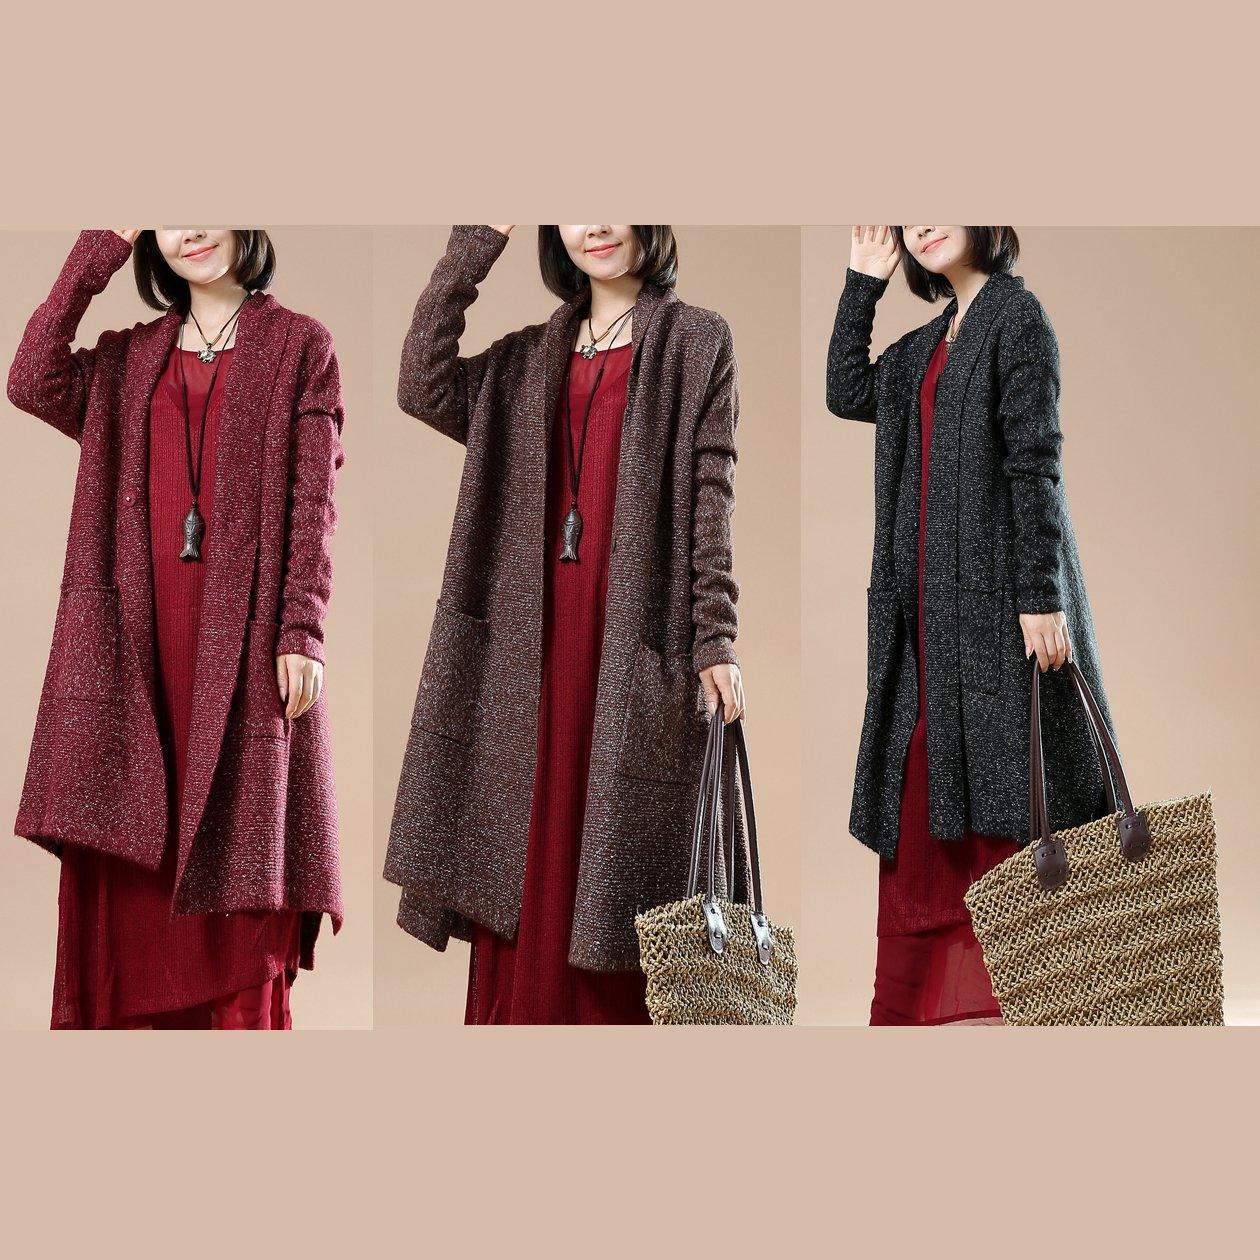 Burgundy long sleeve knit cardigans oversize coats - Omychic